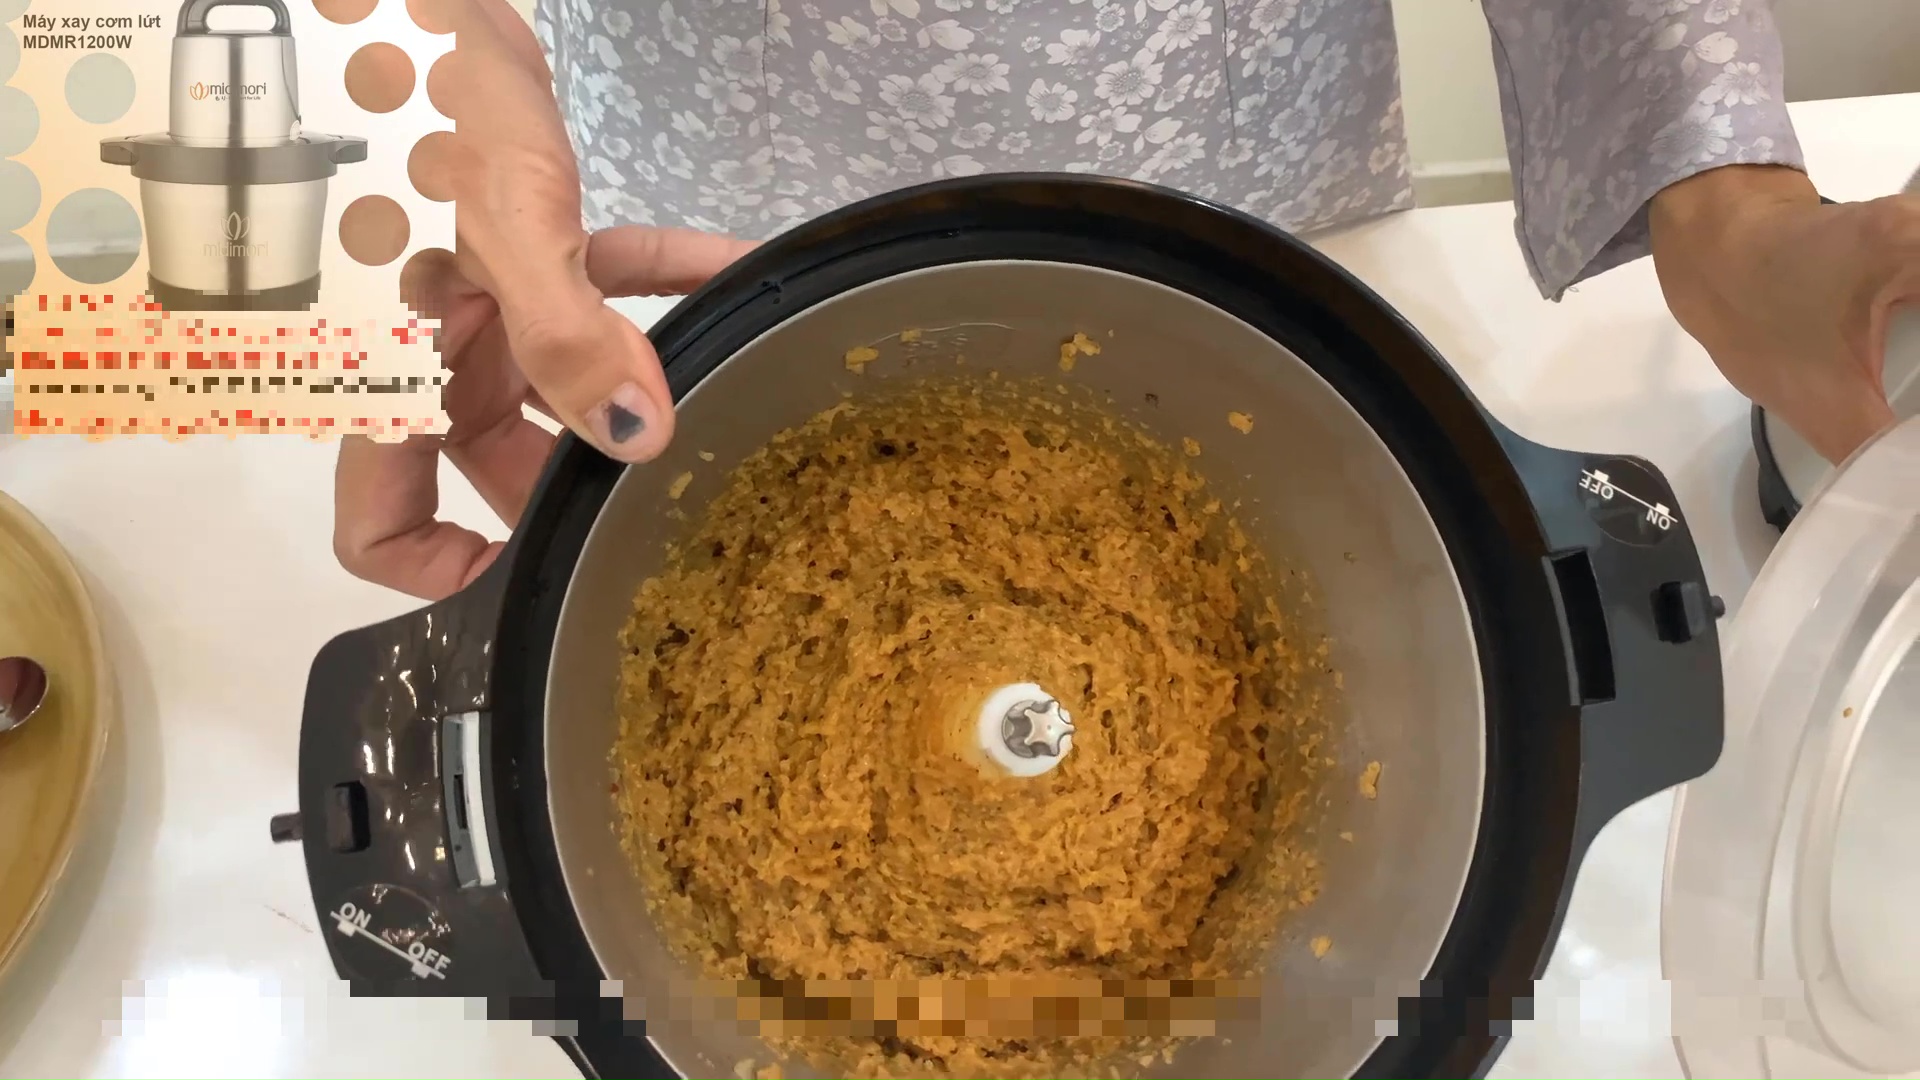 Máy xay cơm gạo lứt: Dụng cụ hỗ trợ cho người ăn chay